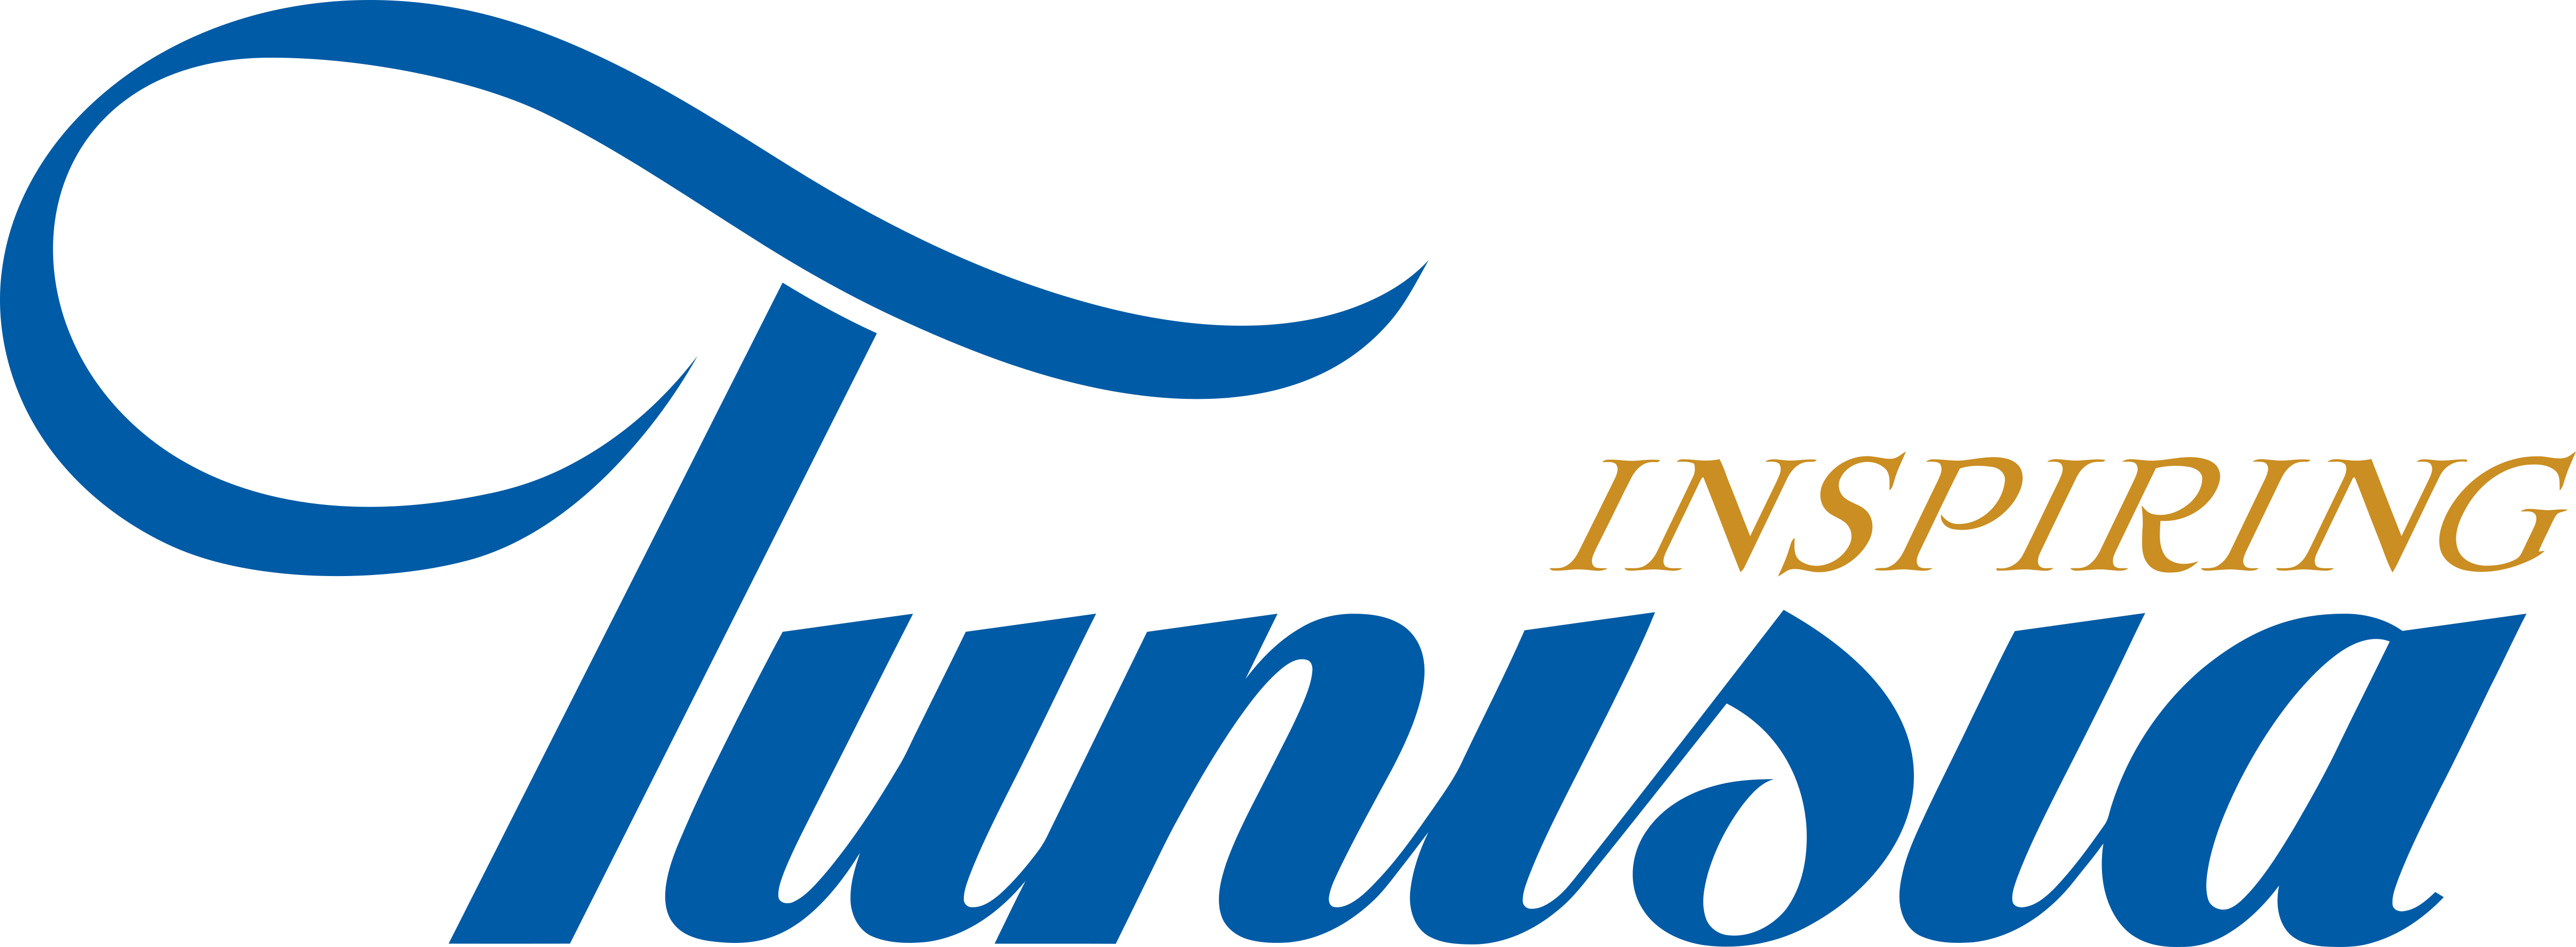 tunisia travel company